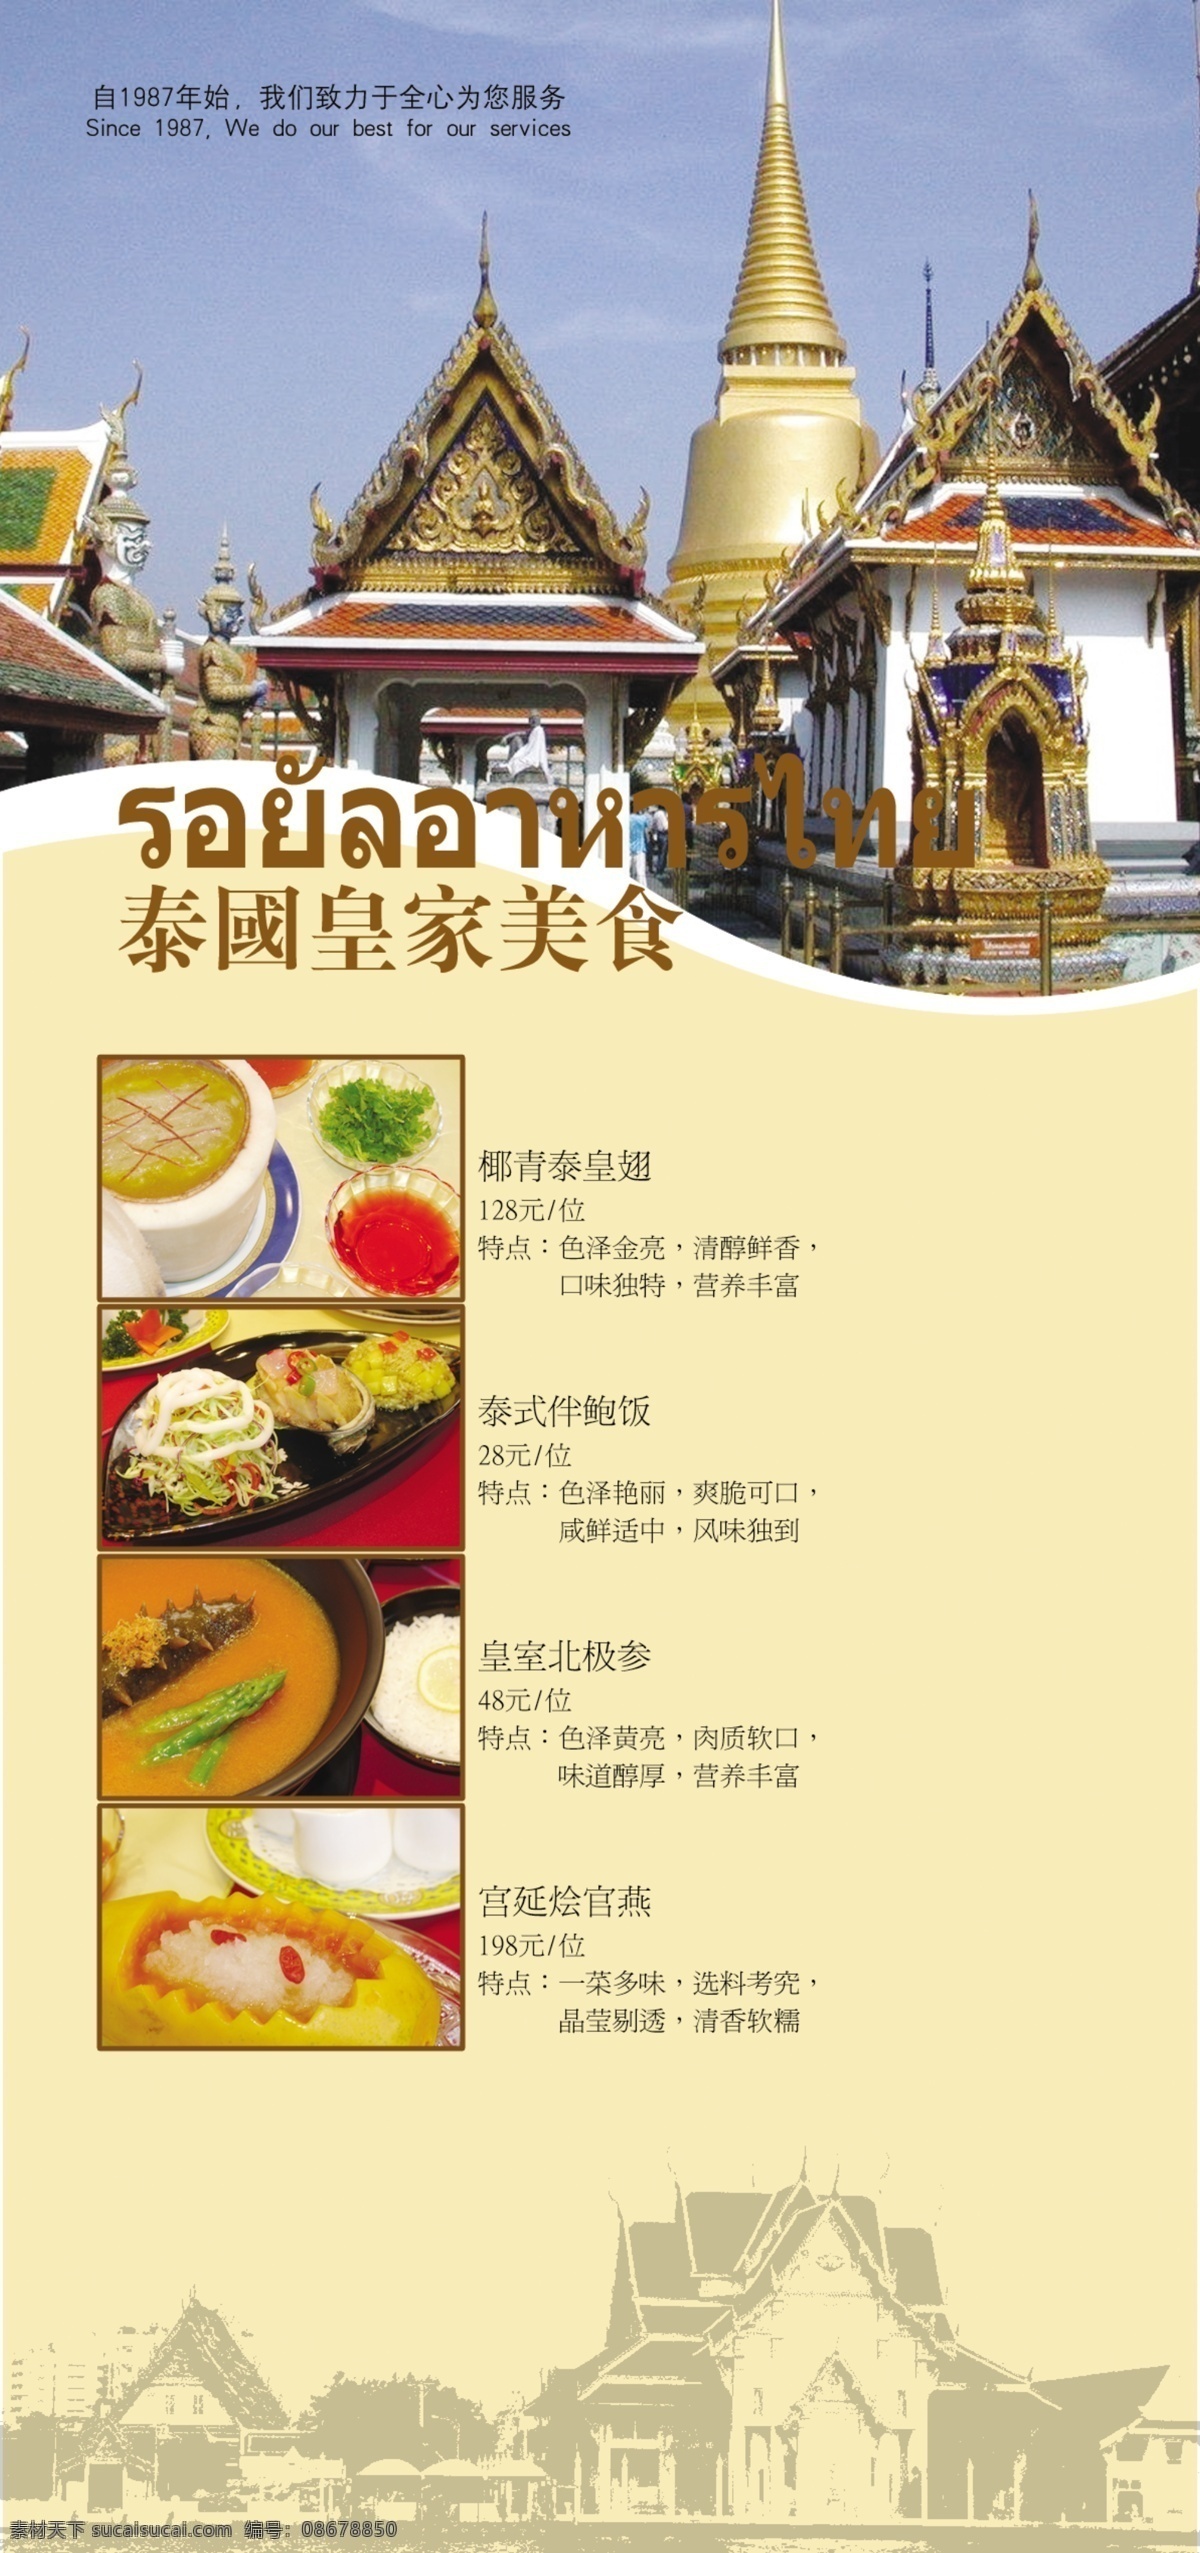 泰国 菜 彩页 菜品 风景 广告设计模板 画册设计 美食 泰国菜 源文件 海报 宣传海报 宣传单 dm